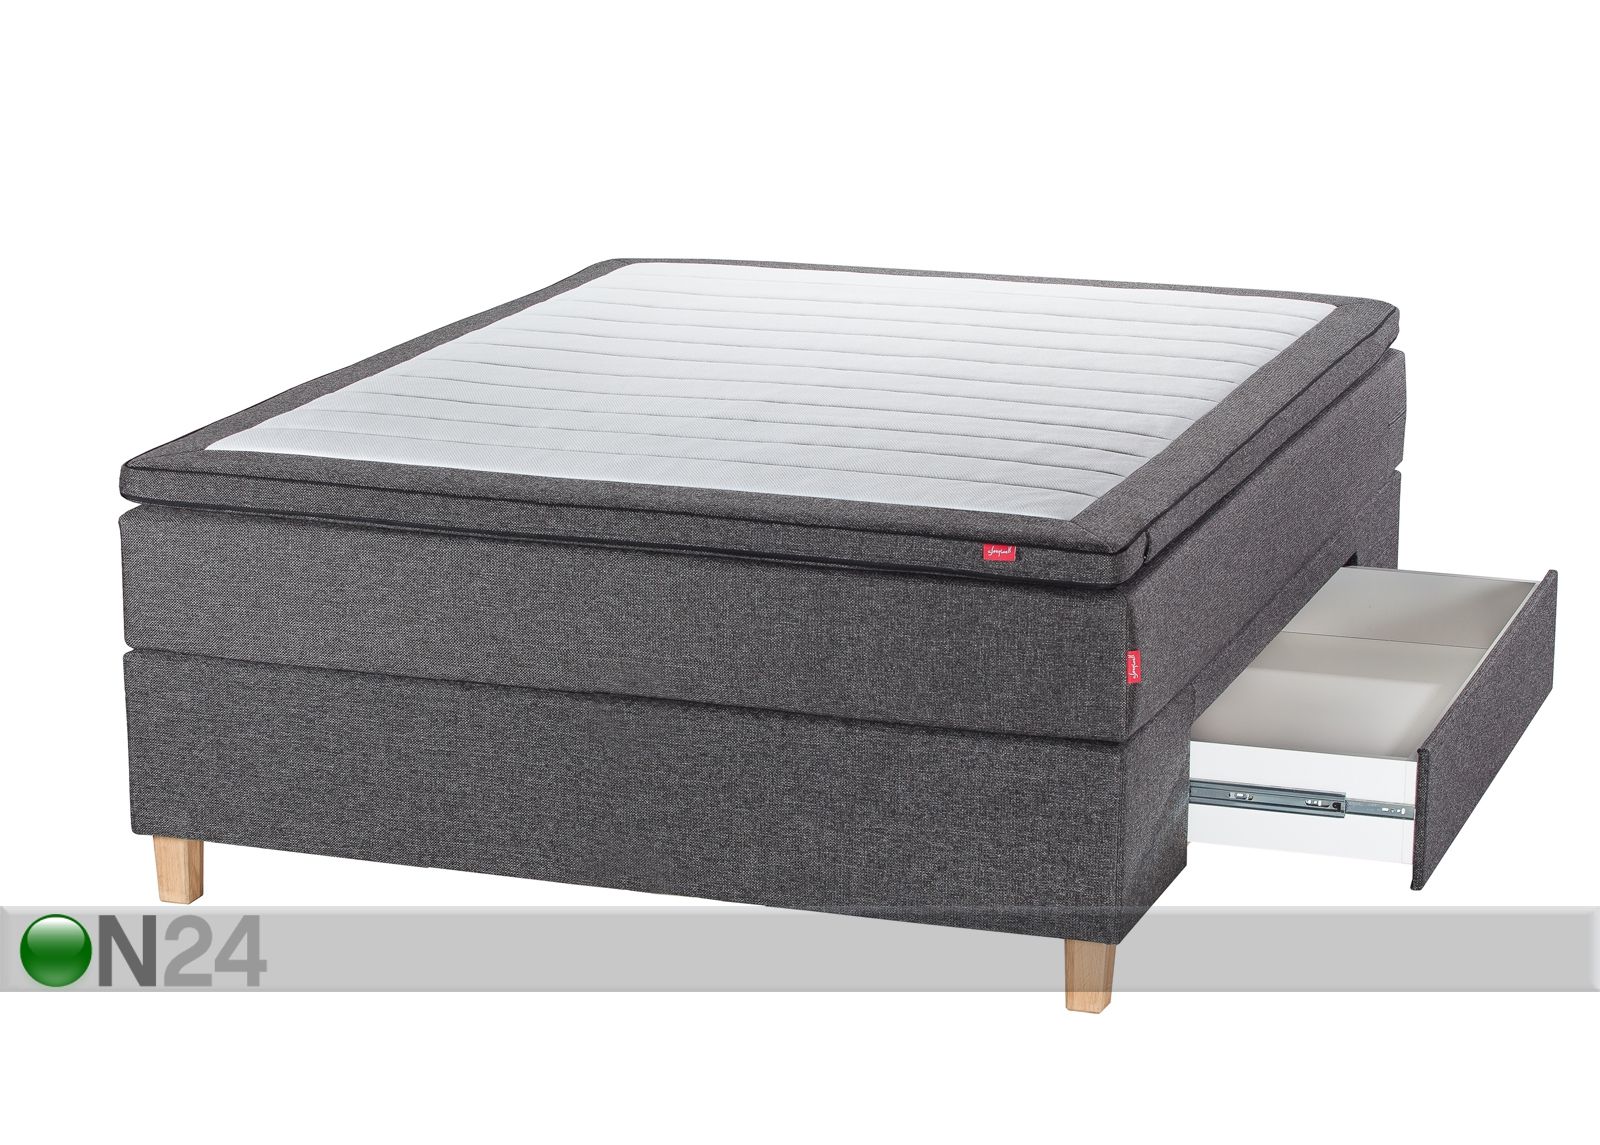 Sleepwell Black континентальная кровать с ящиком 140x200 cm увеличить